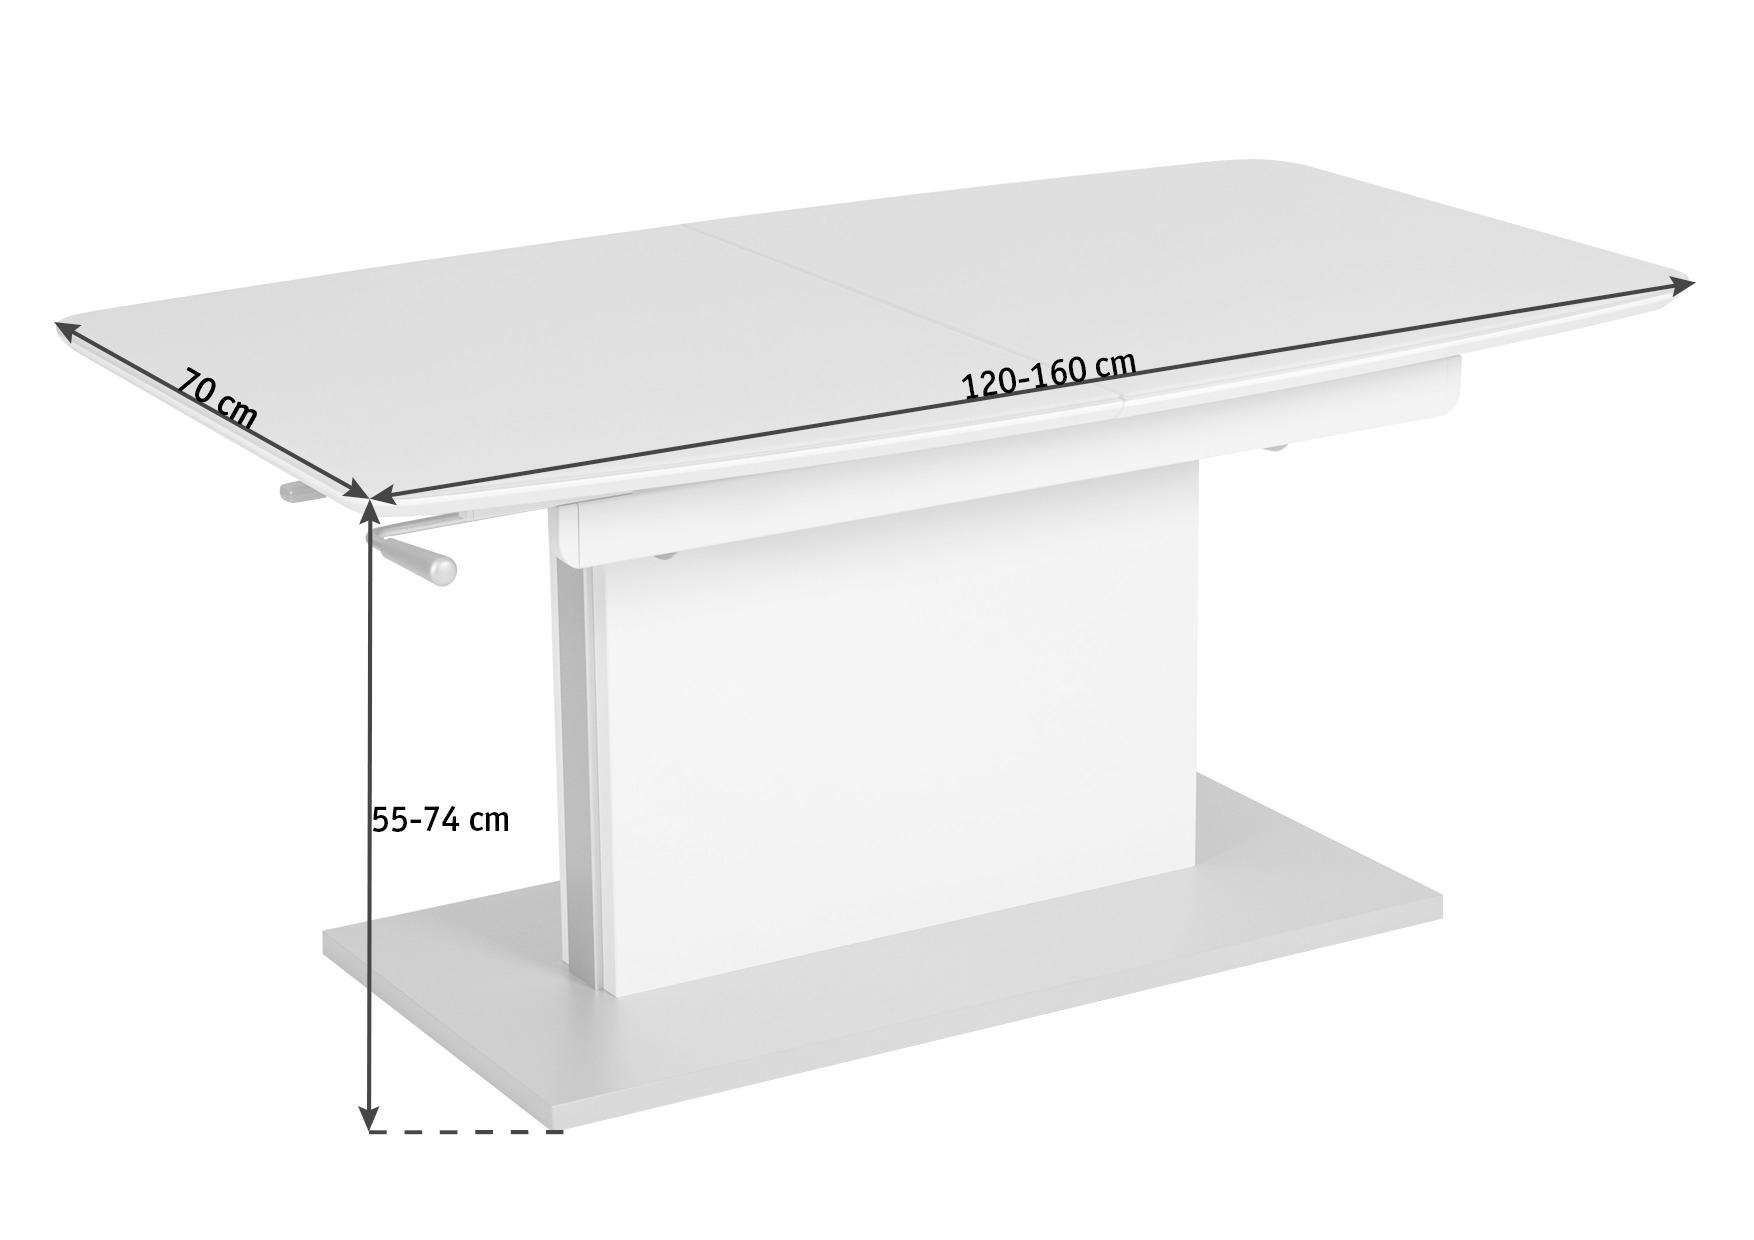 COUCHTISCH rechteckig Weiß 120-160/70/55-74 cm  - Weiß, Design, Glas/Metall (120-160/70/55-74cm)